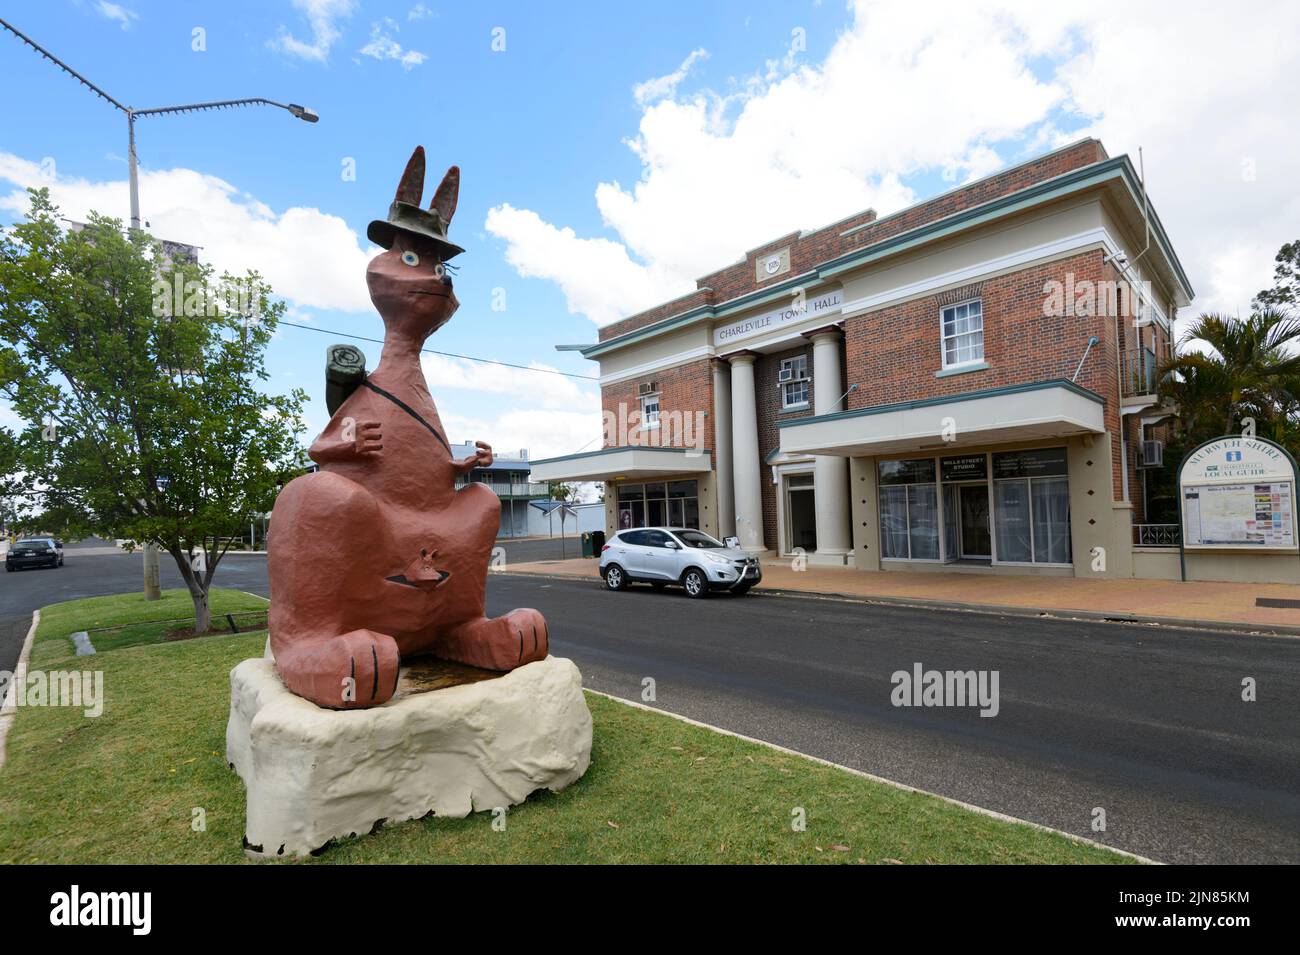 Matilda la sculpture kangourou en face de l'imposant hôtel de ville de Wills Street, Charleville, sud-ouest du Queensland, Queensland, Australie Banque D'Images